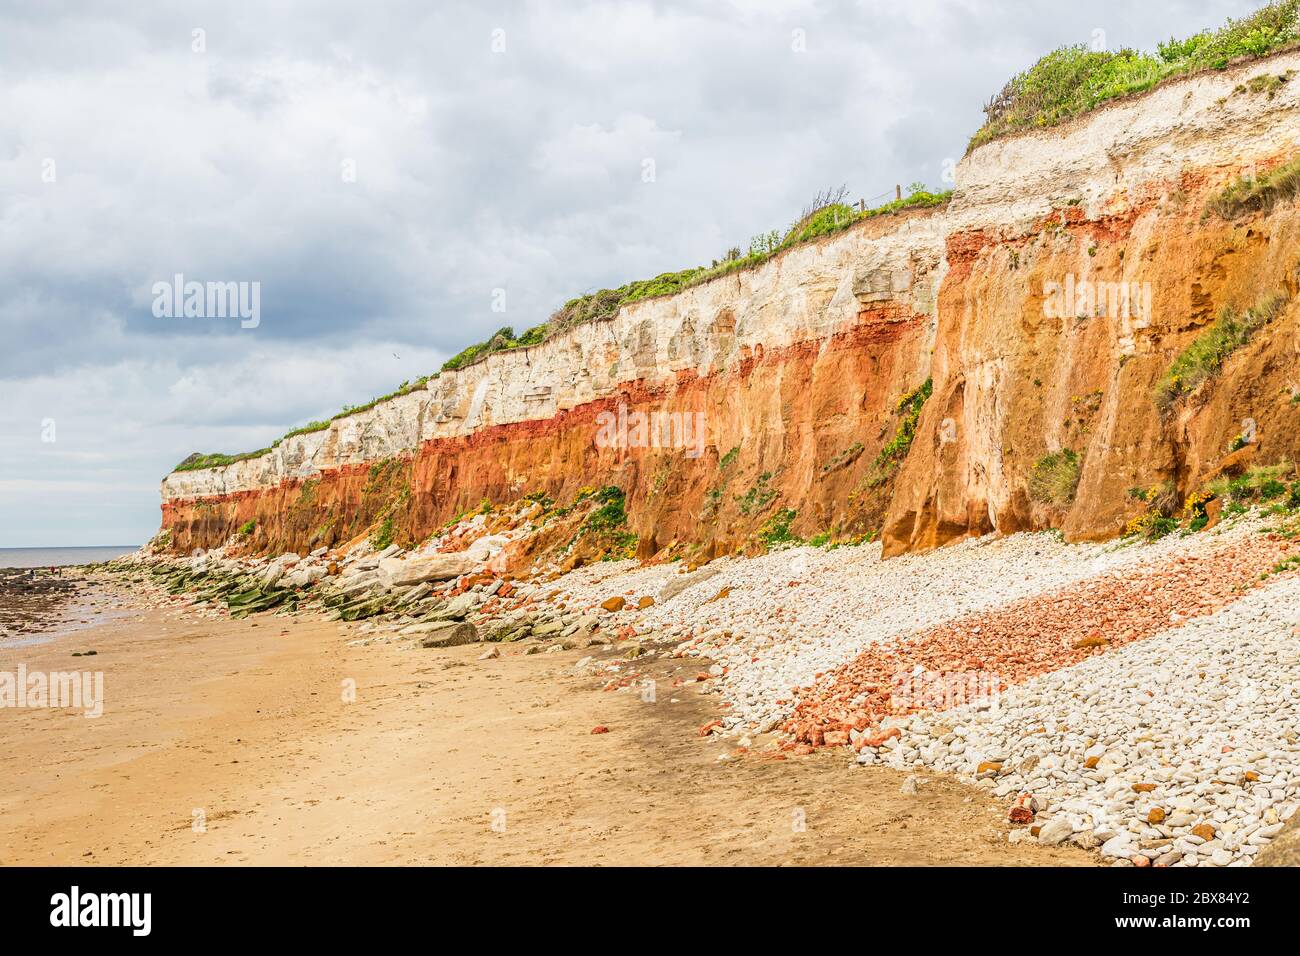 Rocas sedimentarias de color naranja, rojo y blanco a lo largo de la playa en Hunstanton, Norfolk, East Anglia, Reino Unido. Foto de stock